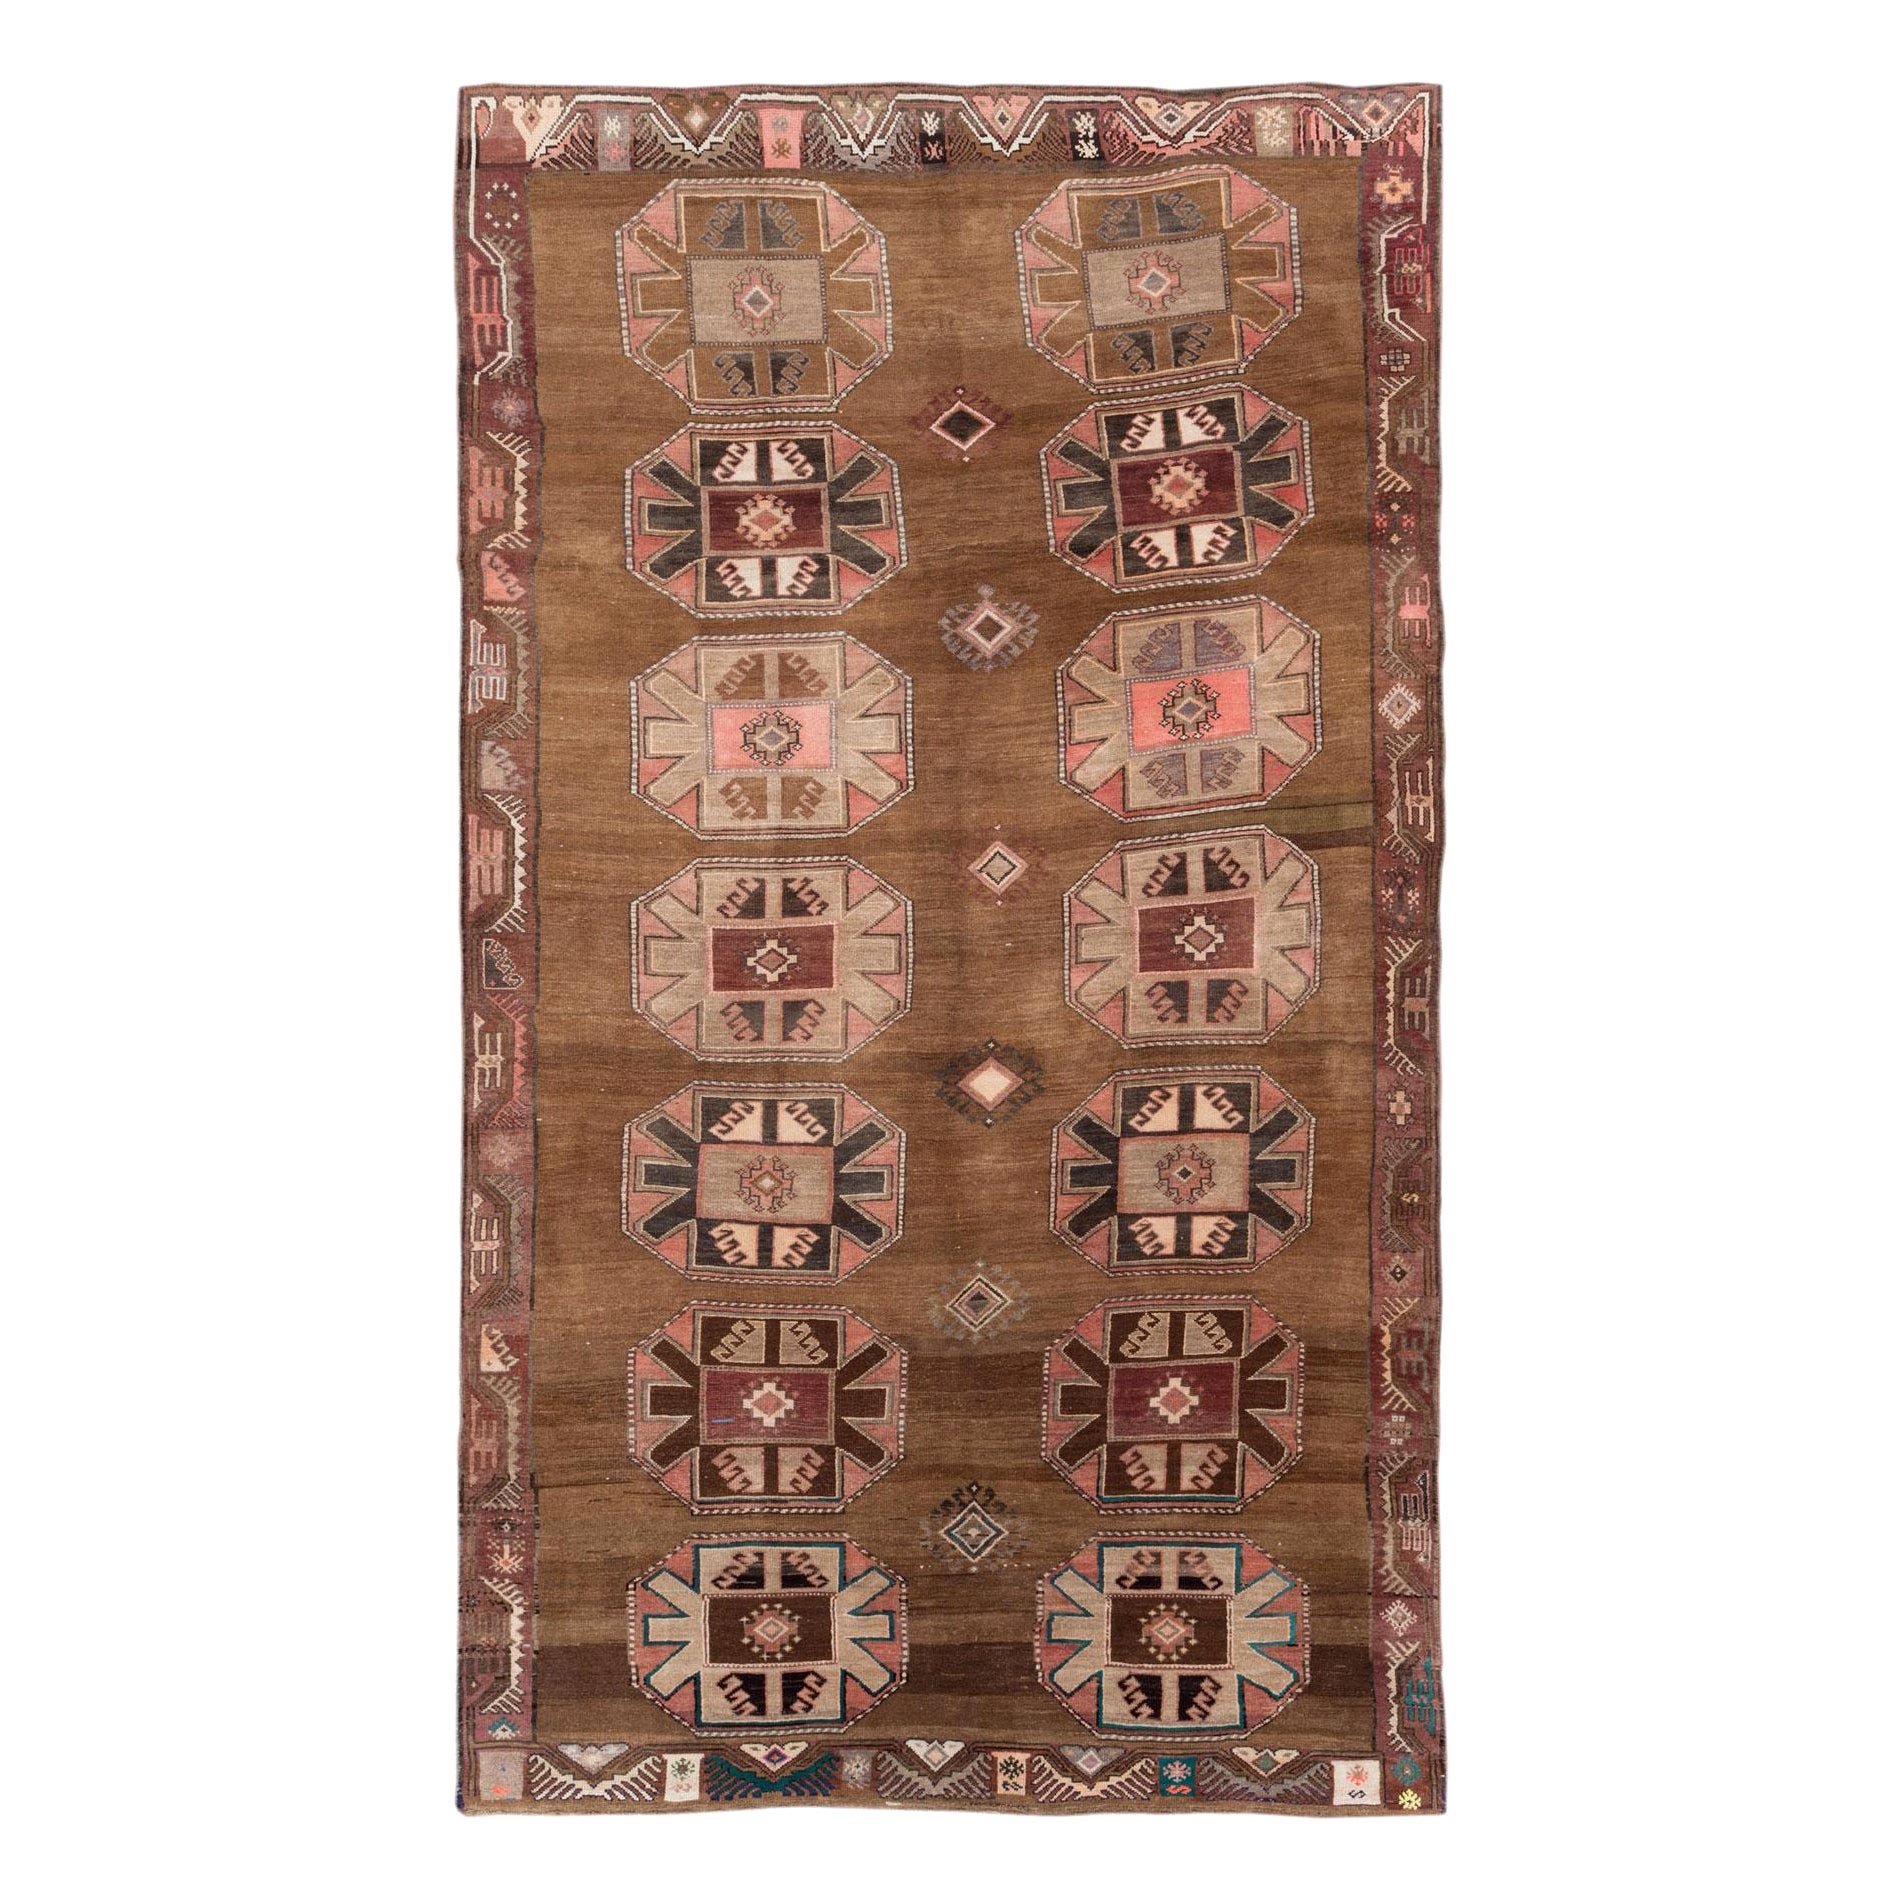 Mitte des 20. Jahrhunderts handgefertigter türkischer Stammes-Teppich in Zimmergröße